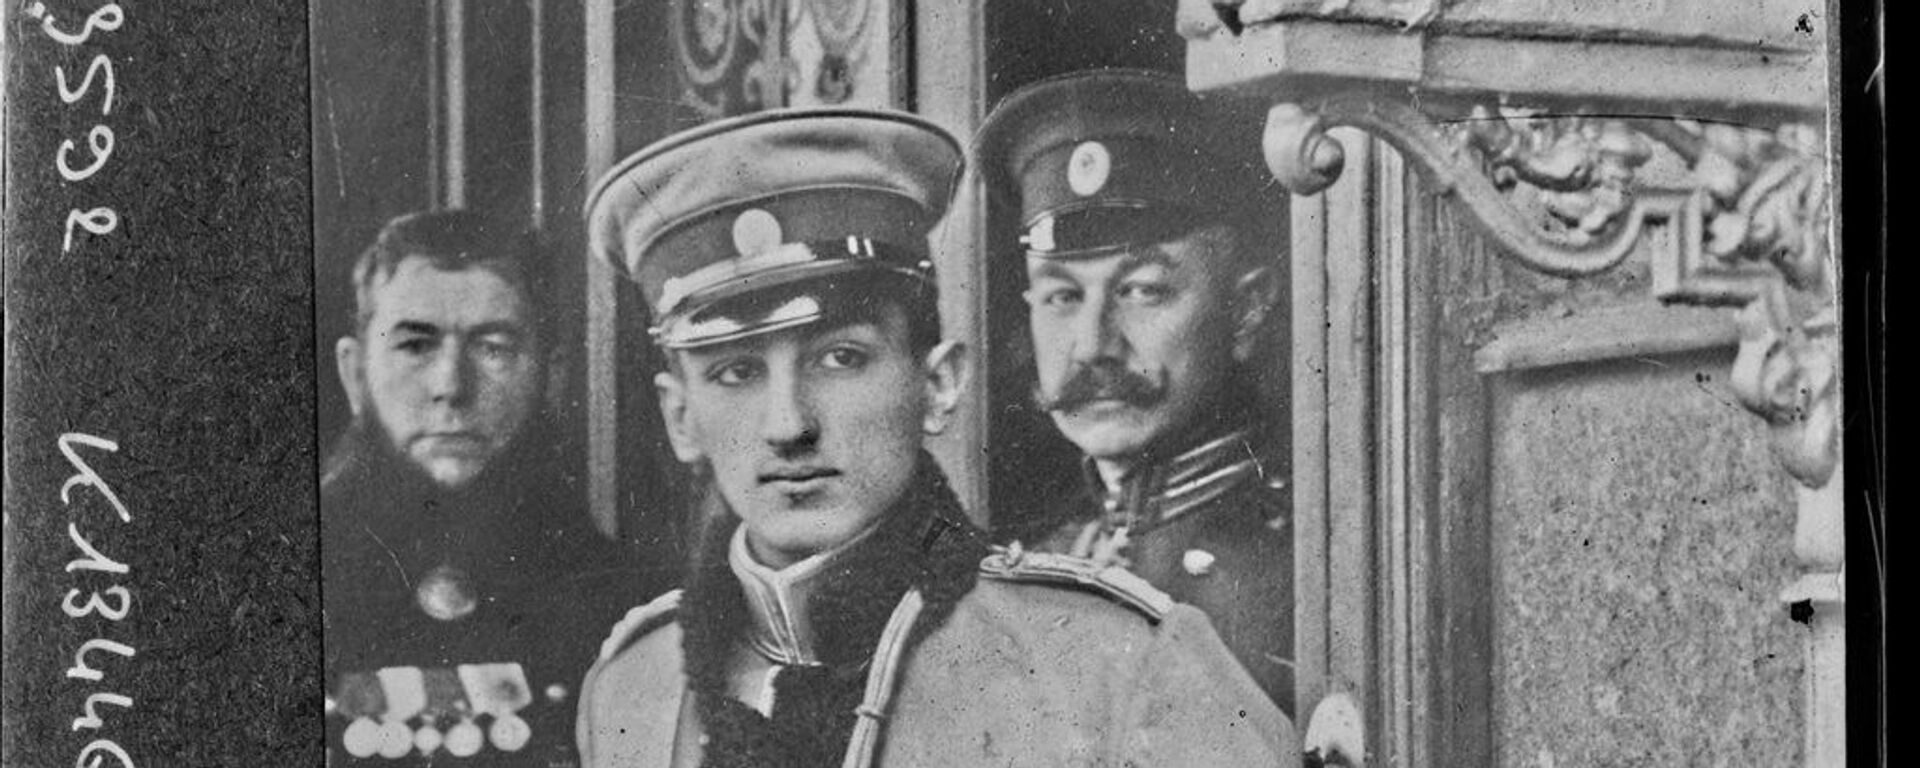 Prestolonaslednik Đorđe u Sankt Peterburgu. 17. oktobra 1908. - Sputnik Srbija, 1920, 18.10.2020